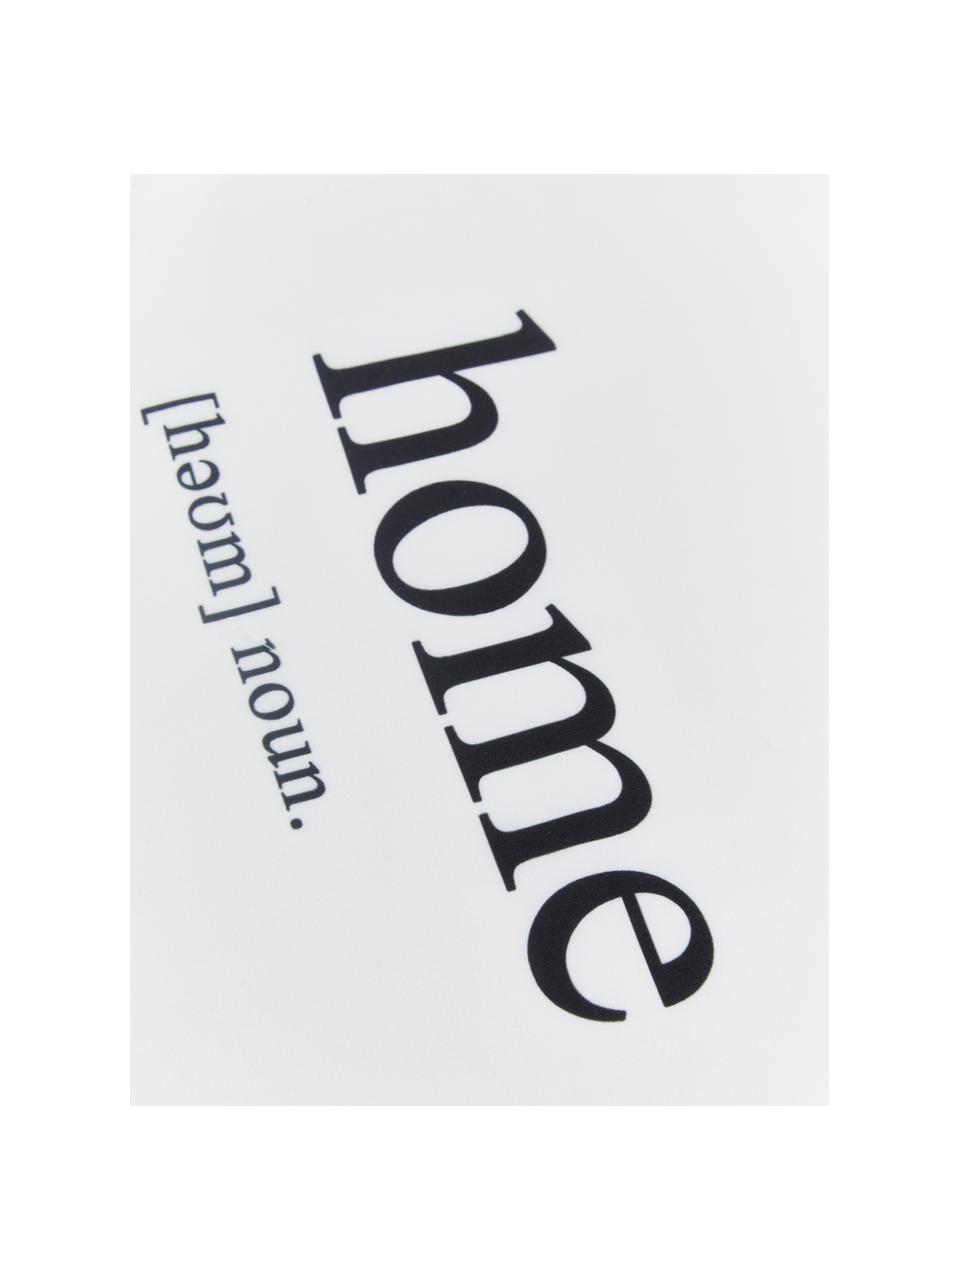 Kussenhoes Home in zwart/wit met opschrift, 100% polyester, Zwart, wit, 45 x 45 cm